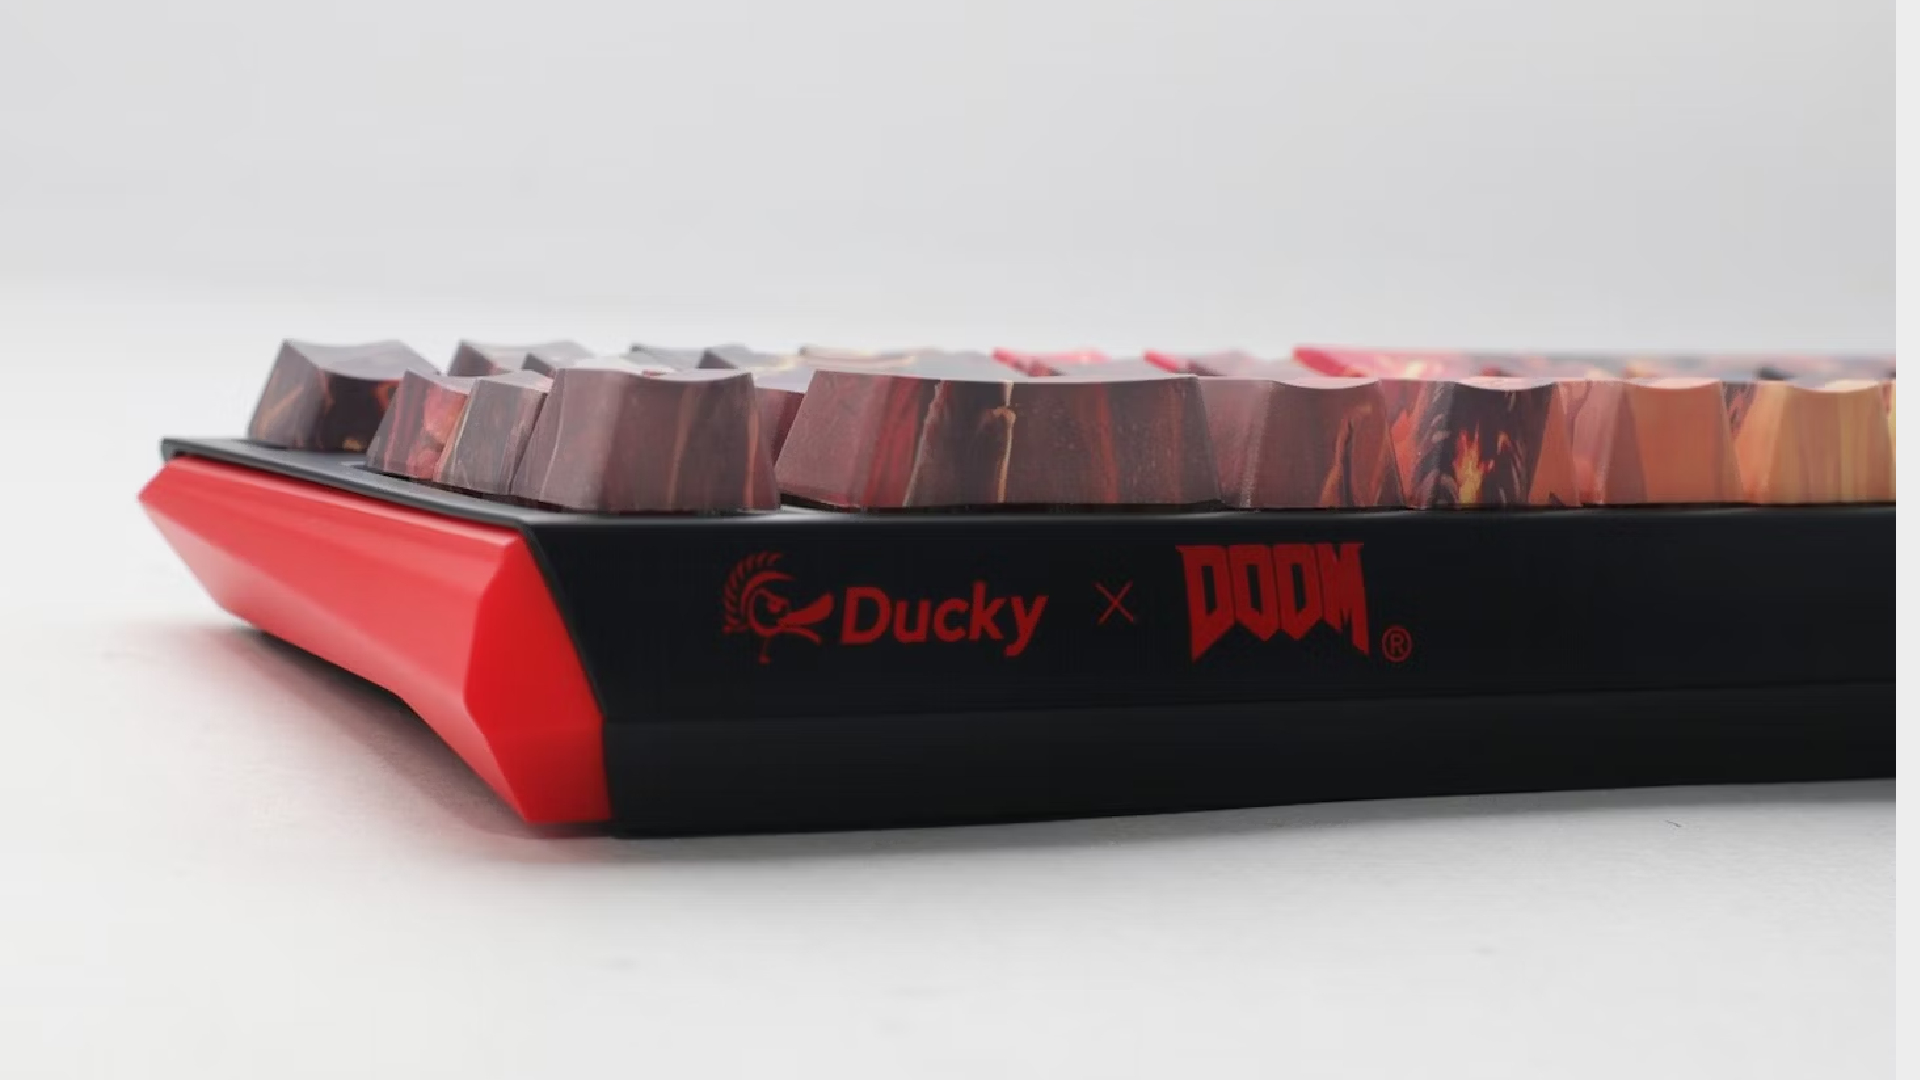 Ducky x DOOM SF 65% keyboard